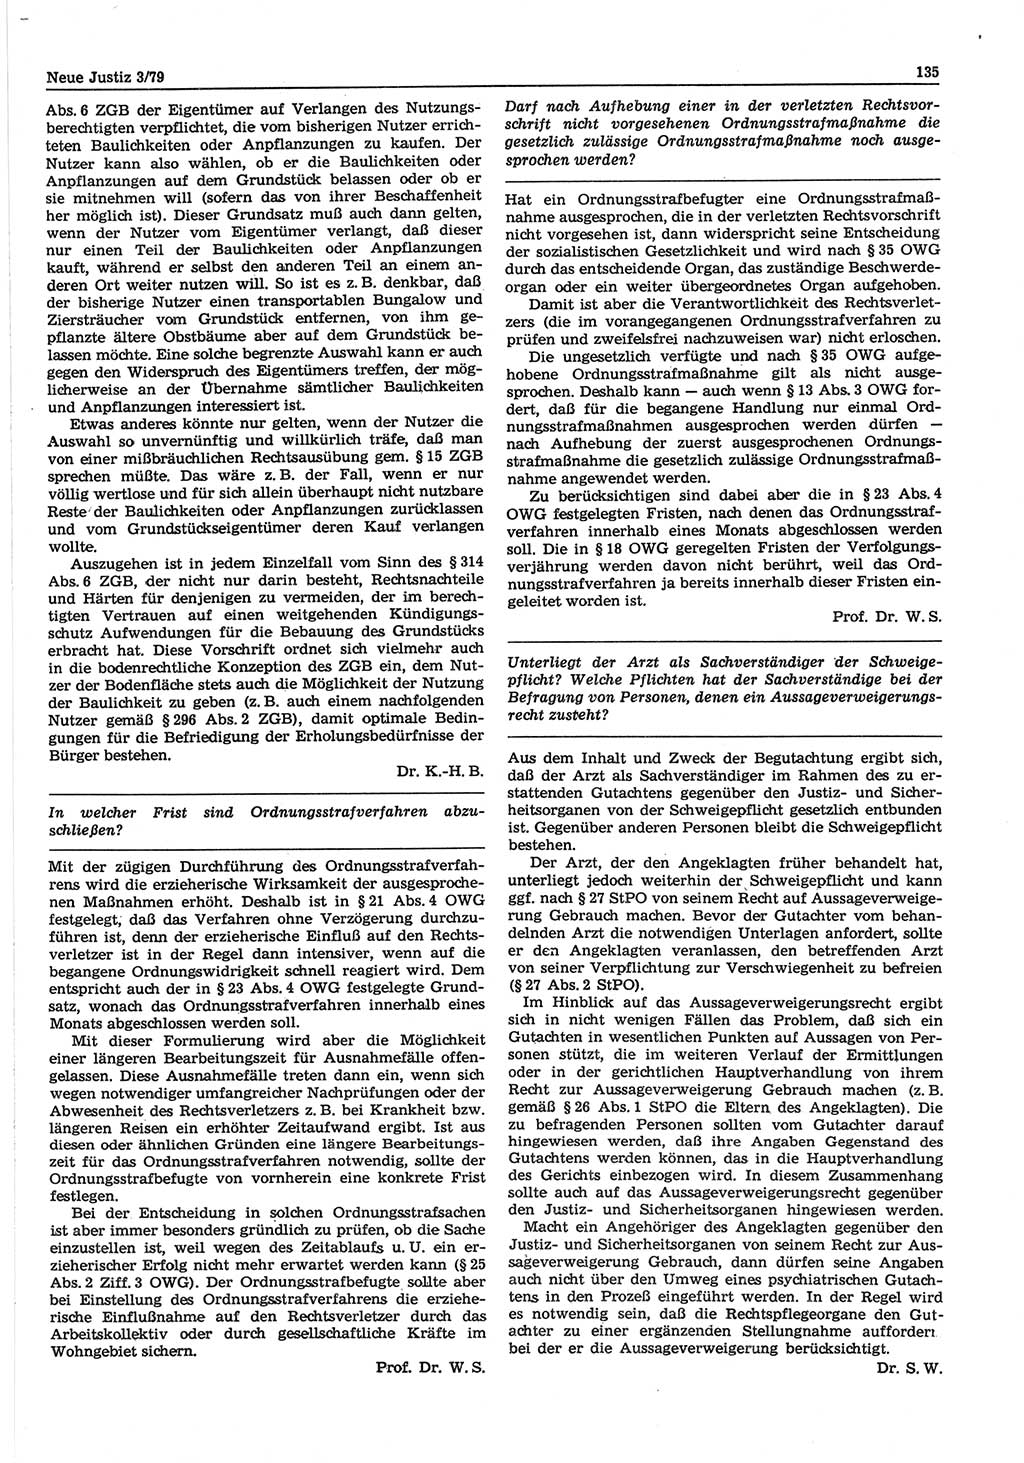 Neue Justiz (NJ), Zeitschrift für sozialistisches Recht und Gesetzlichkeit [Deutsche Demokratische Republik (DDR)], 33. Jahrgang 1979, Seite 135 (NJ DDR 1979, S. 135)